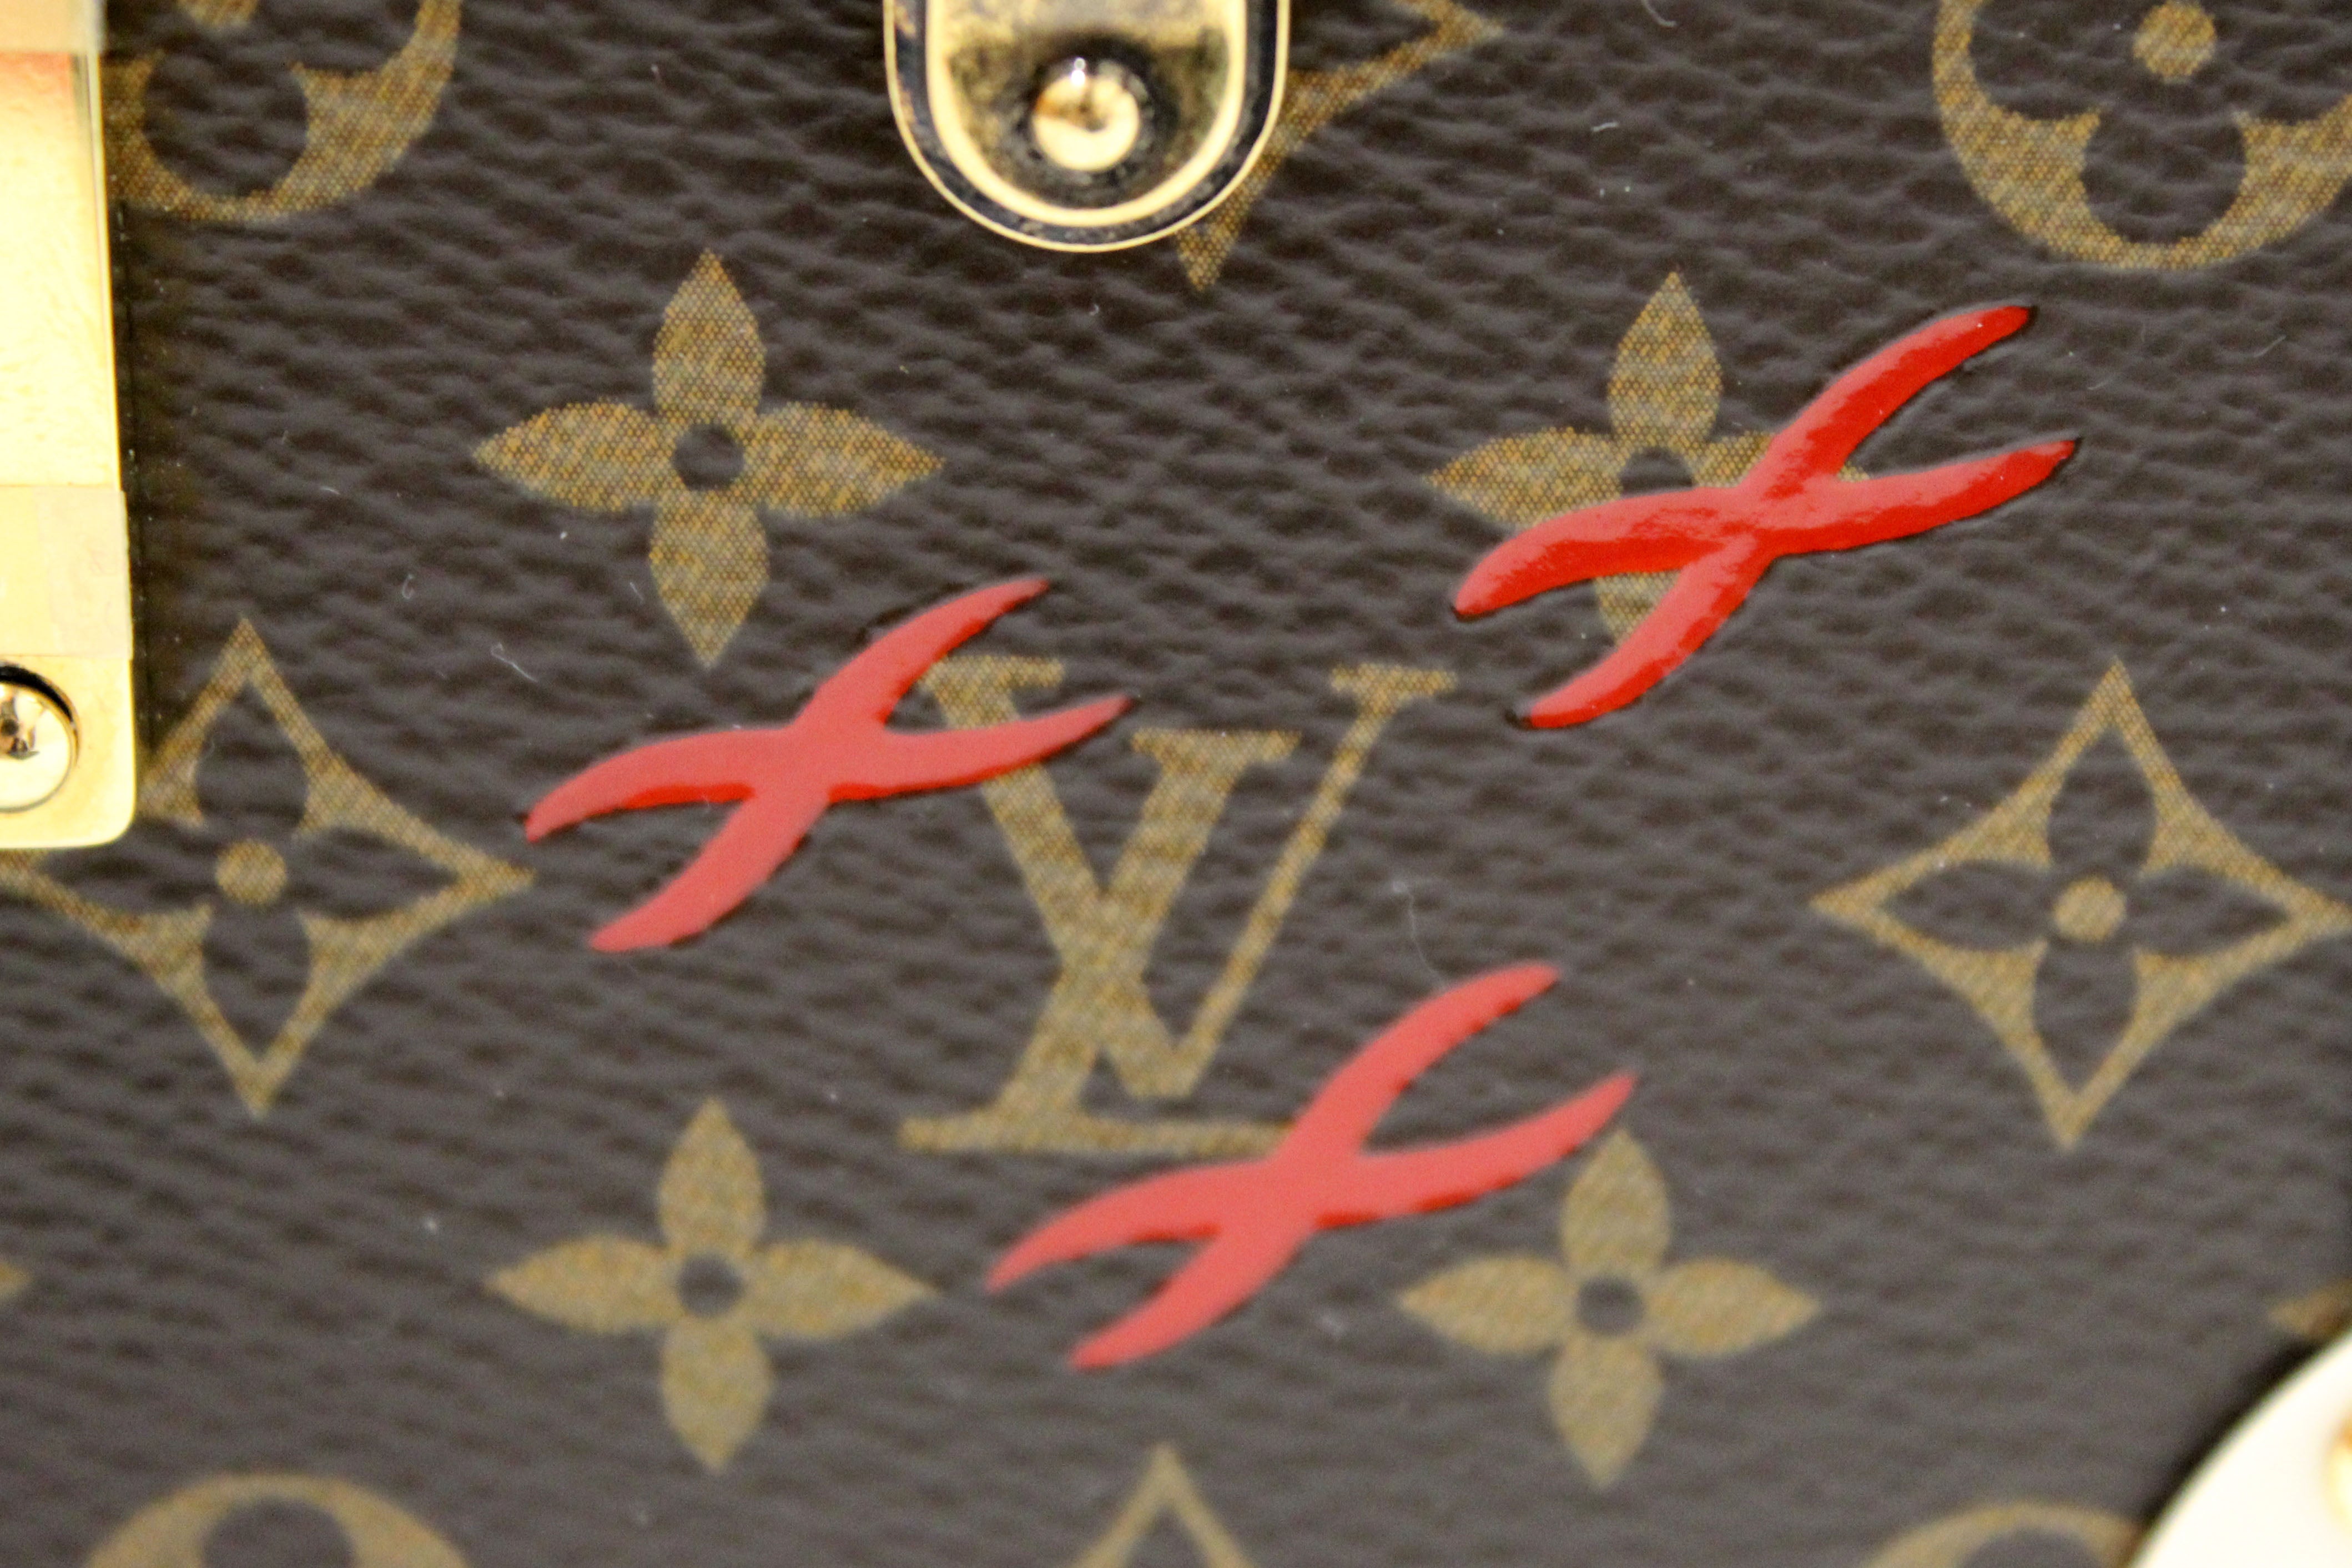 Louis Vuitton Petite Malle Handbag Limited Edition Reflective Monogram  Canvas - ShopStyle Clutches